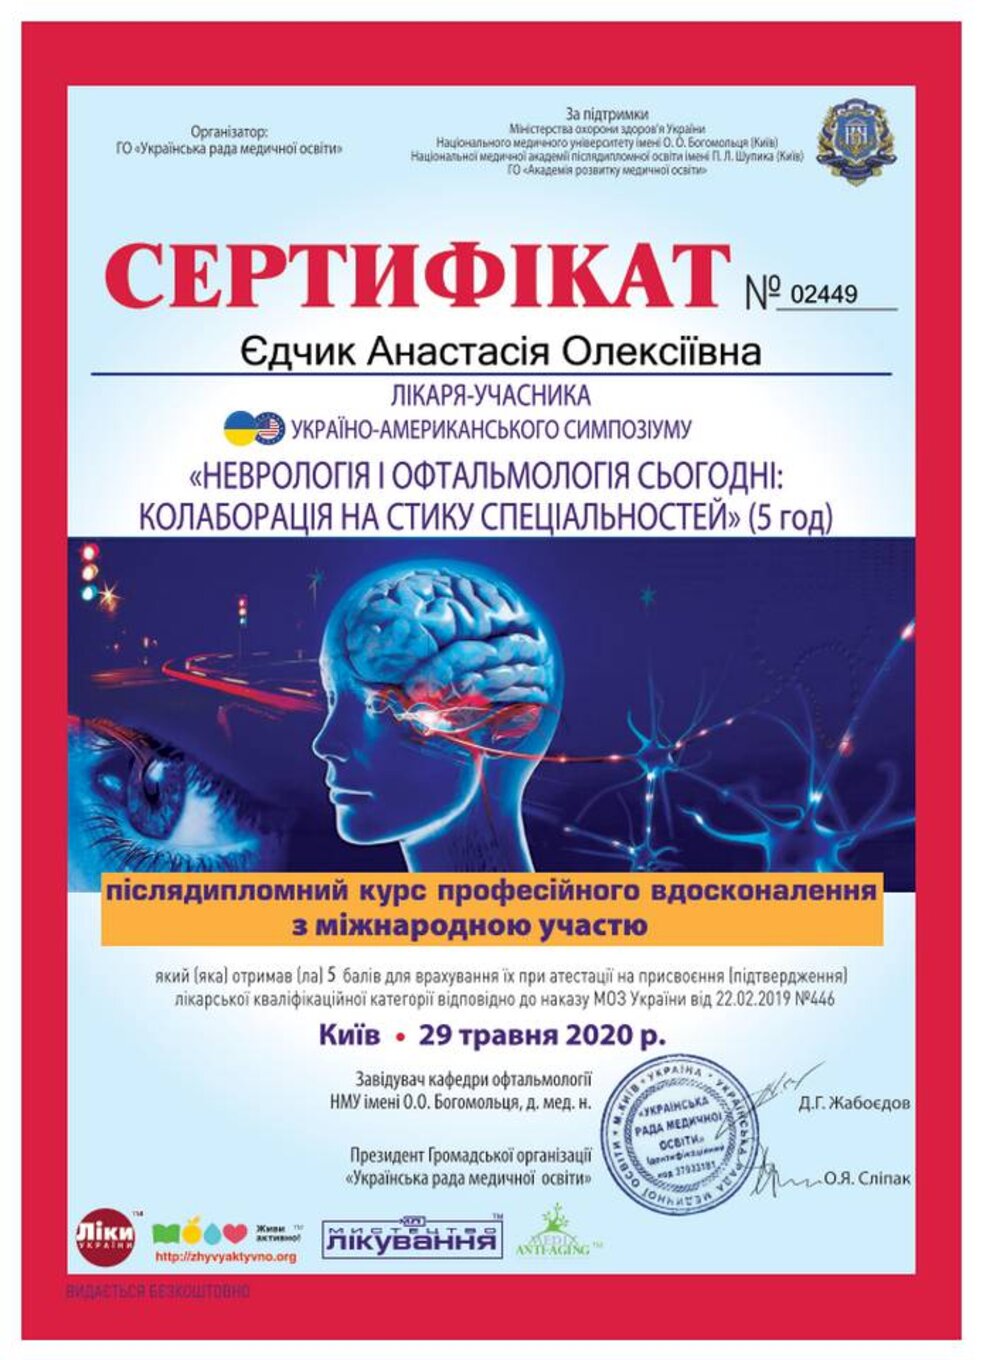 certificates/yedchik-anastasiya-oleksiyivna/erc-edchik-cert-97.jpg